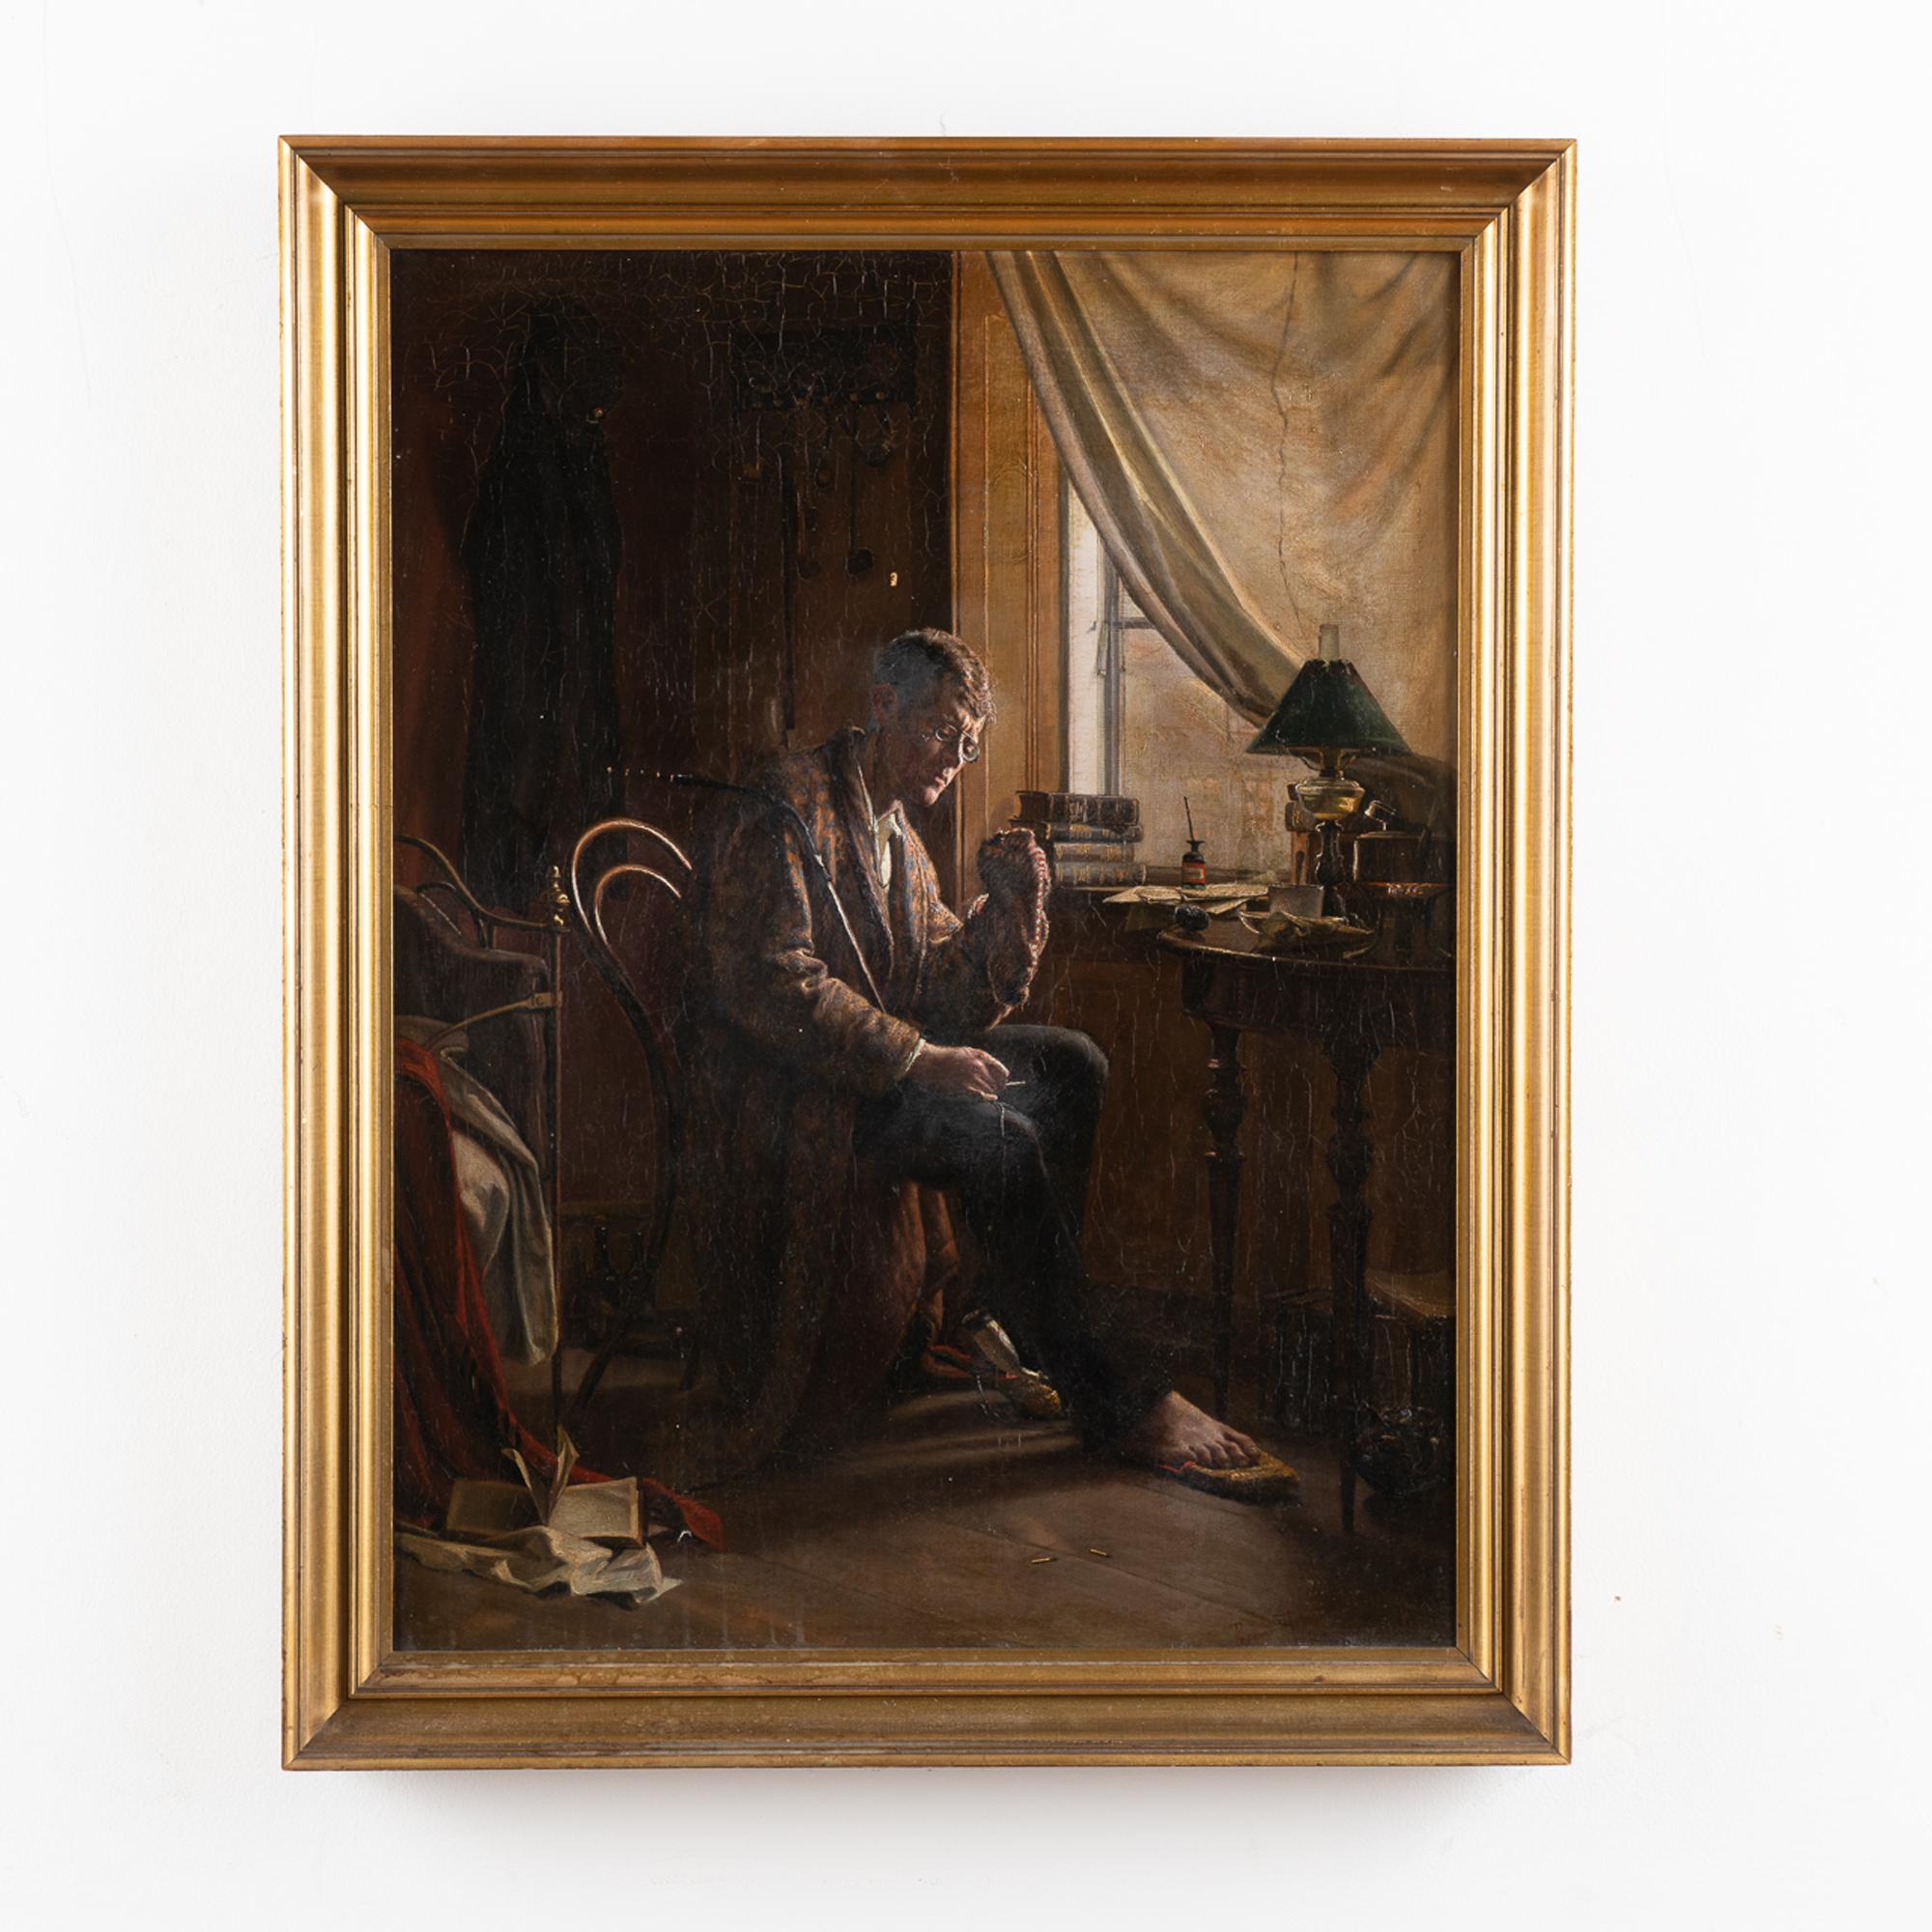 Peinture originale à l'huile sur toile de Christian Pram-Henningsen (Danemark 1846-1892).
Le sujet est un jeune étudiant en train de repriser ses chaussettes à la lumière d'une fenêtre.
Huile sur toile. Signé et daté (coin inférieur droit)